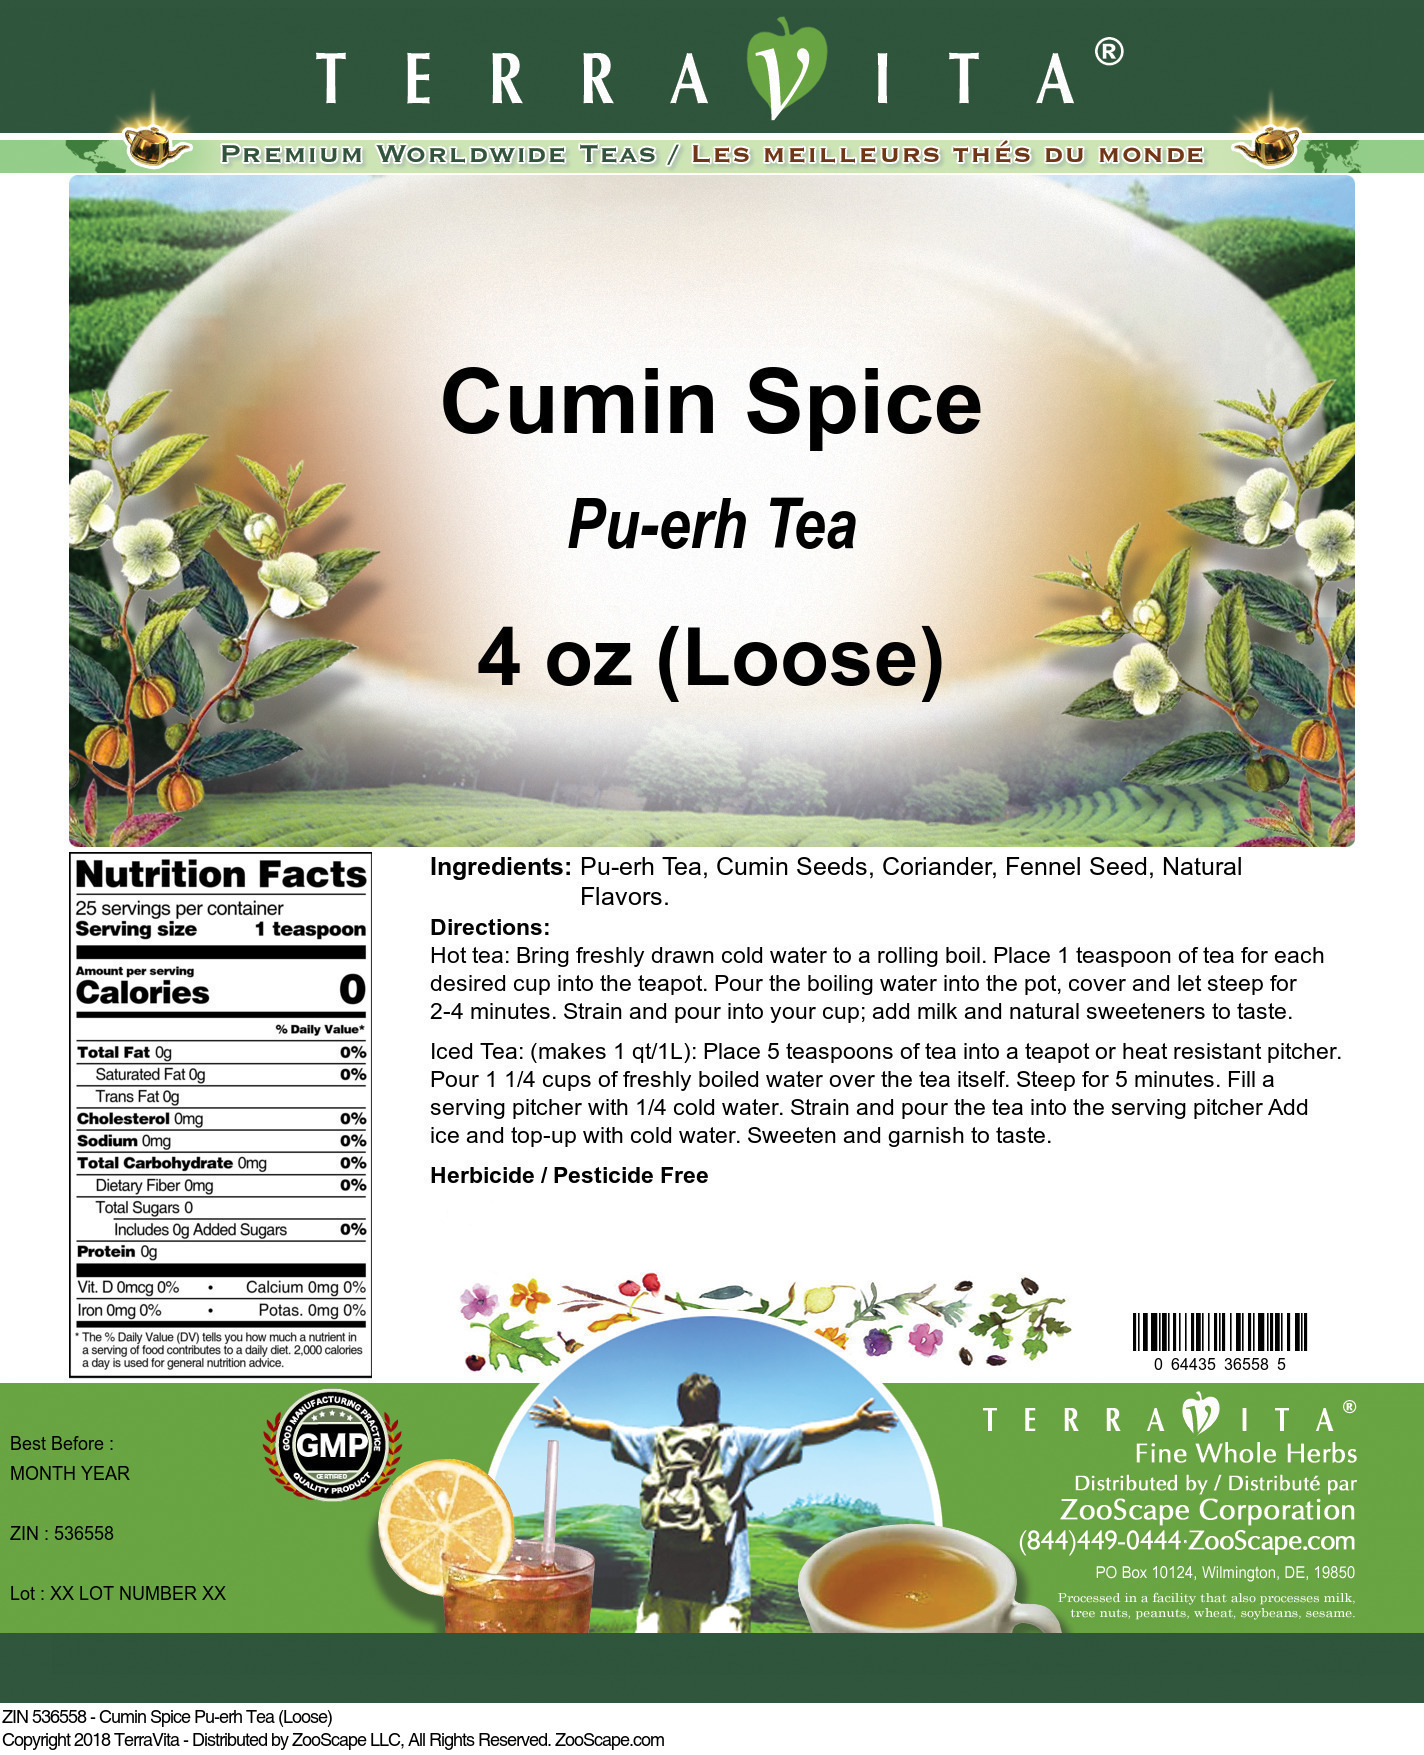 Cumin Spice Pu-erh Tea (Loose) - Label